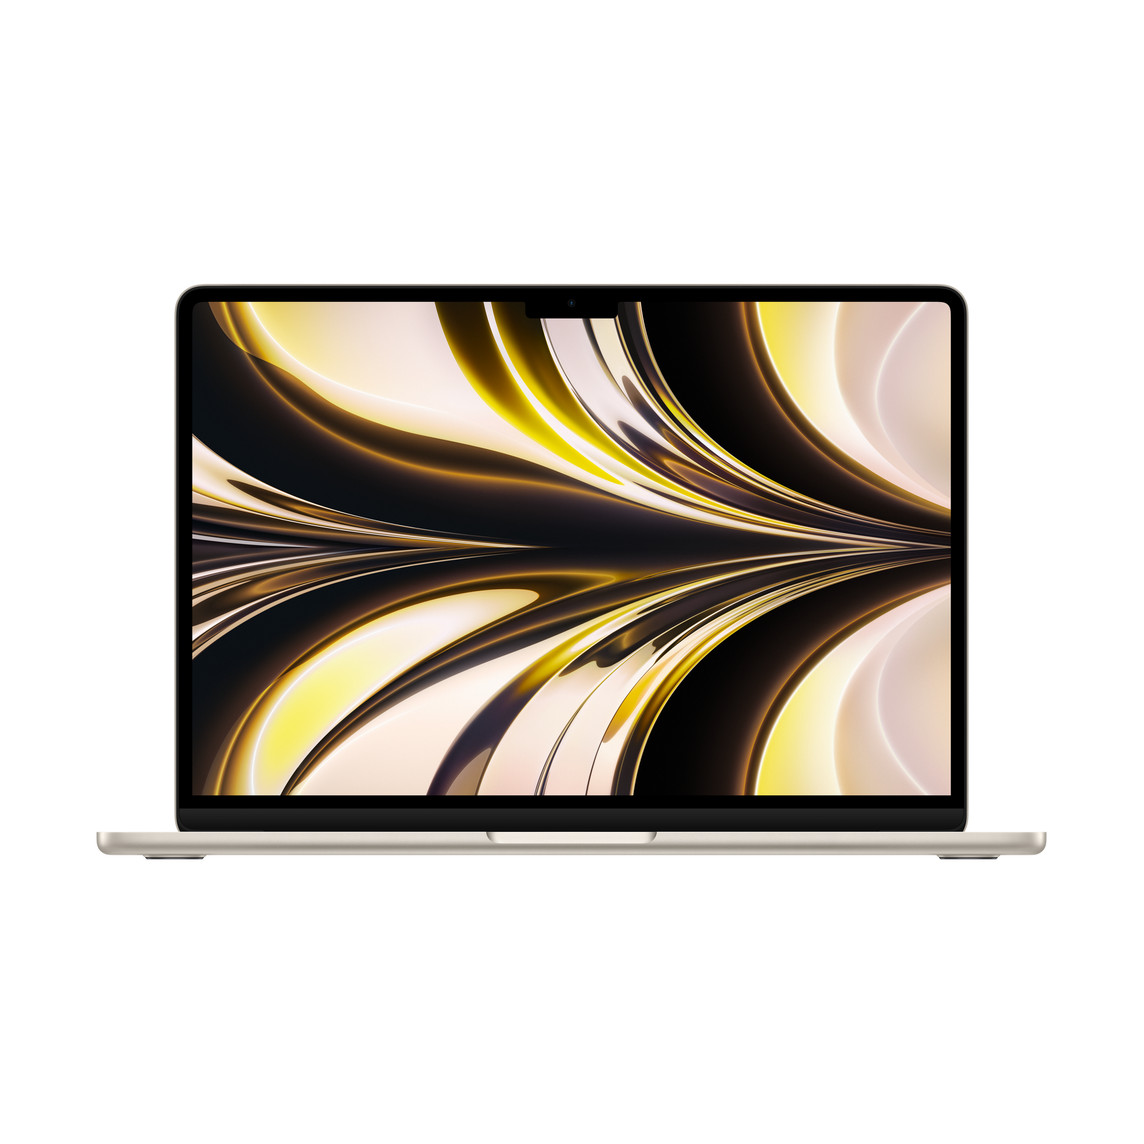 打開的 MacBook Air，展示纖薄的邊框、FaceTime HD 相機、凸出的腳座、圓邊設計，星光色外觀